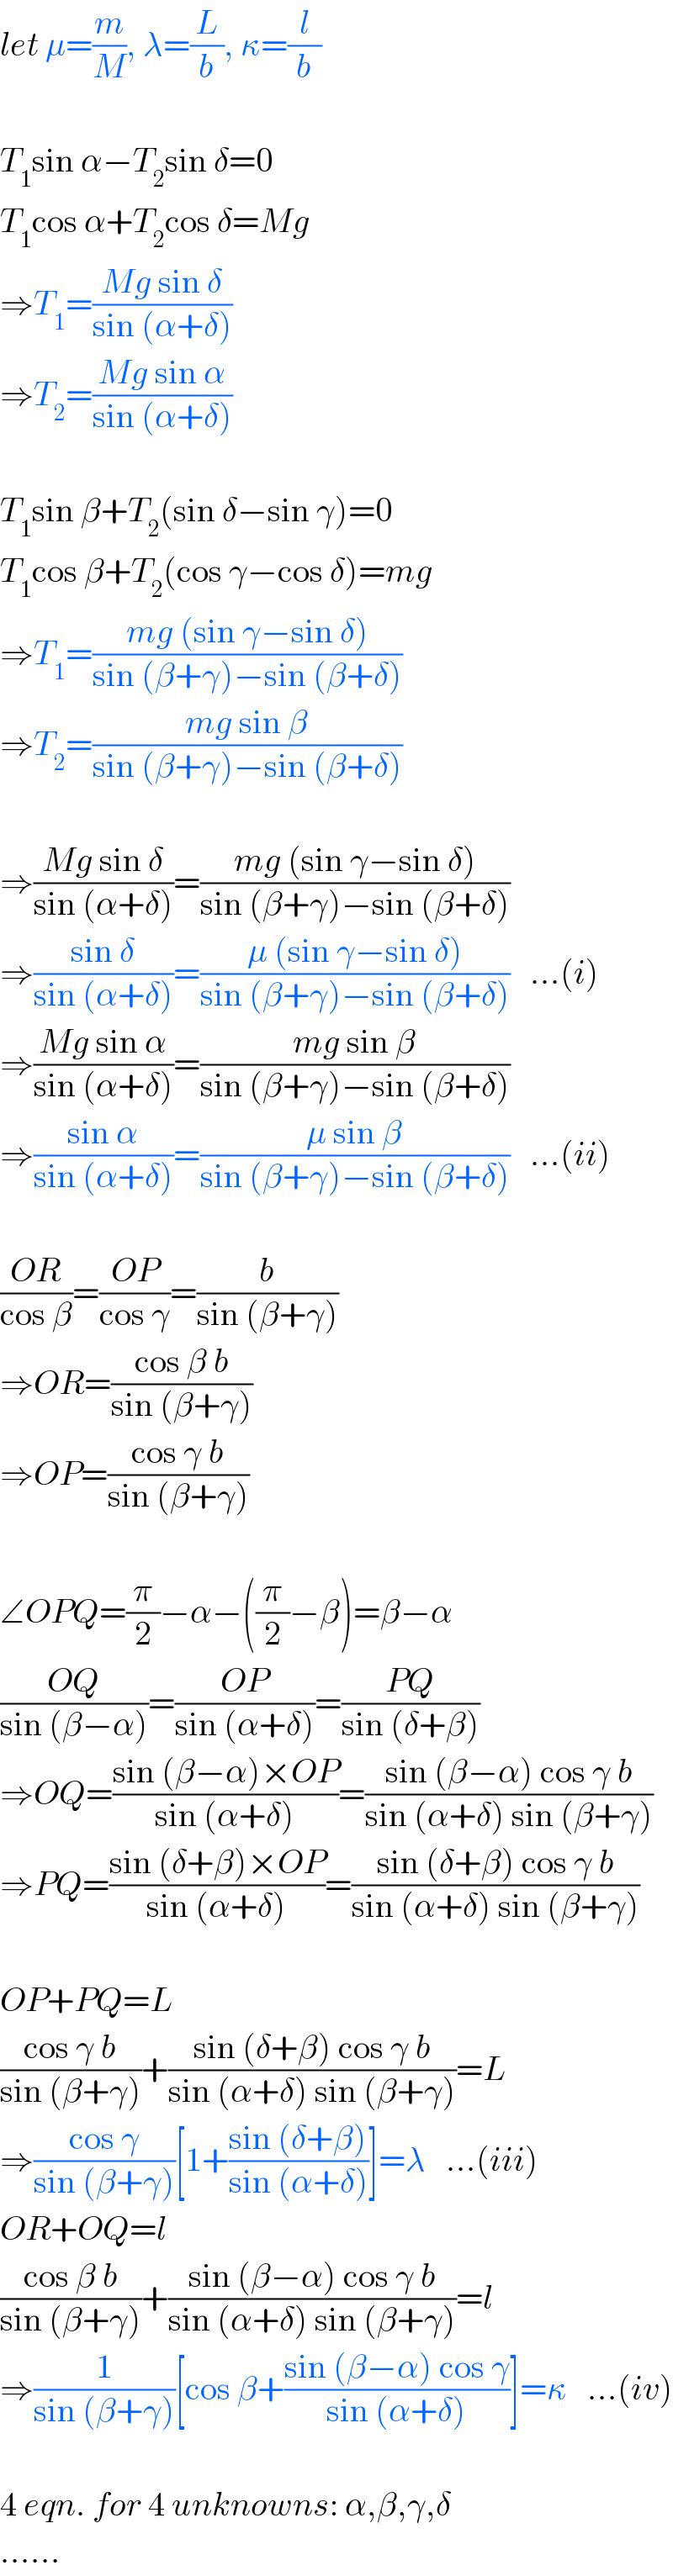 let μ=(m/M), λ=(L/b), κ=(l/b)    T_1 sin α−T_2 sin δ=0  T_1 cos α+T_2 cos δ=Mg  ⇒T_1 =((Mg sin δ)/(sin (α+δ)))  ⇒T_2 =((Mg sin α)/(sin (α+δ)))    T_1 sin β+T_2 (sin δ−sin γ)=0  T_1 cos β+T_2 (cos γ−cos δ)=mg  ⇒T_1 =((mg (sin γ−sin δ))/(sin (β+γ)−sin (β+δ)))  ⇒T_2 =((mg sin β)/(sin (β+γ)−sin (β+δ)))    ⇒((Mg sin δ)/(sin (α+δ)))=((mg (sin γ−sin δ))/(sin (β+γ)−sin (β+δ)))  ⇒((sin δ)/(sin (α+δ)))=((μ (sin γ−sin δ))/(sin (β+γ)−sin (β+δ)))   ...(i)  ⇒((Mg sin α)/(sin (α+δ)))=((mg sin β)/(sin (β+γ)−sin (β+δ)))  ⇒((sin α)/(sin (α+δ)))=((μ sin β)/(sin (β+γ)−sin (β+δ)))   ...(ii)    ((OR)/(cos β))=((OP)/(cos γ))=(b/(sin (β+γ)))  ⇒OR=((cos β b)/(sin (β+γ)))  ⇒OP=((cos γ b)/(sin (β+γ)))    ∠OPQ=(π/2)−α−((π/2)−β)=β−α  ((OQ)/(sin (β−α)))=((OP)/(sin (α+δ)))=((PQ)/(sin (δ+β)))  ⇒OQ=((sin (β−α)×OP)/(sin (α+δ)))=((sin (β−α) cos γ b)/(sin (α+δ) sin (β+γ)))  ⇒PQ=((sin (δ+β)×OP)/(sin (α+δ)))=((sin (δ+β) cos γ b)/(sin (α+δ) sin (β+γ)))    OP+PQ=L  ((cos γ b)/(sin (β+γ)))+((sin (δ+β) cos γ b)/(sin (α+δ) sin (β+γ)))=L  ⇒((cos γ)/(sin (β+γ)))[1+((sin (δ+β))/(sin (α+δ)))]=λ   ...(iii)  OR+OQ=l  ((cos β b)/(sin (β+γ)))+((sin (β−α) cos γ b)/(sin (α+δ) sin (β+γ)))=l  ⇒(1/(sin (β+γ)))[cos β+((sin (β−α) cos γ)/(sin (α+δ)))]=κ   ...(iv)    4 eqn. for 4 unknowns: α,β,γ,δ  ......  